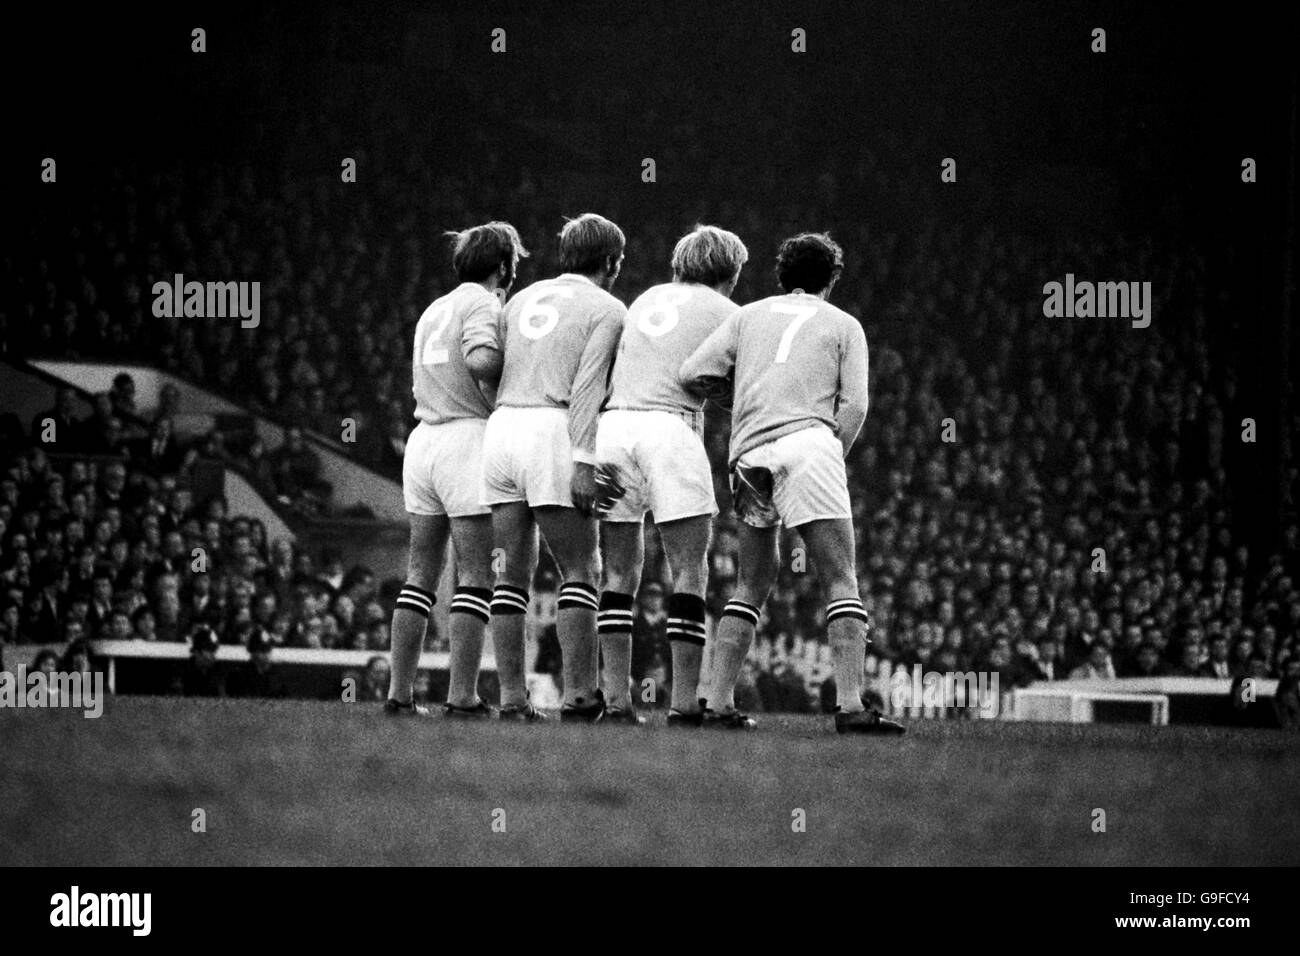 El muro defensivo de Manchester City espera una patada gratis: (l-r) Arthur Mann, Alan Oakes, Colin Bell, Mike Summerbee Foto de stock